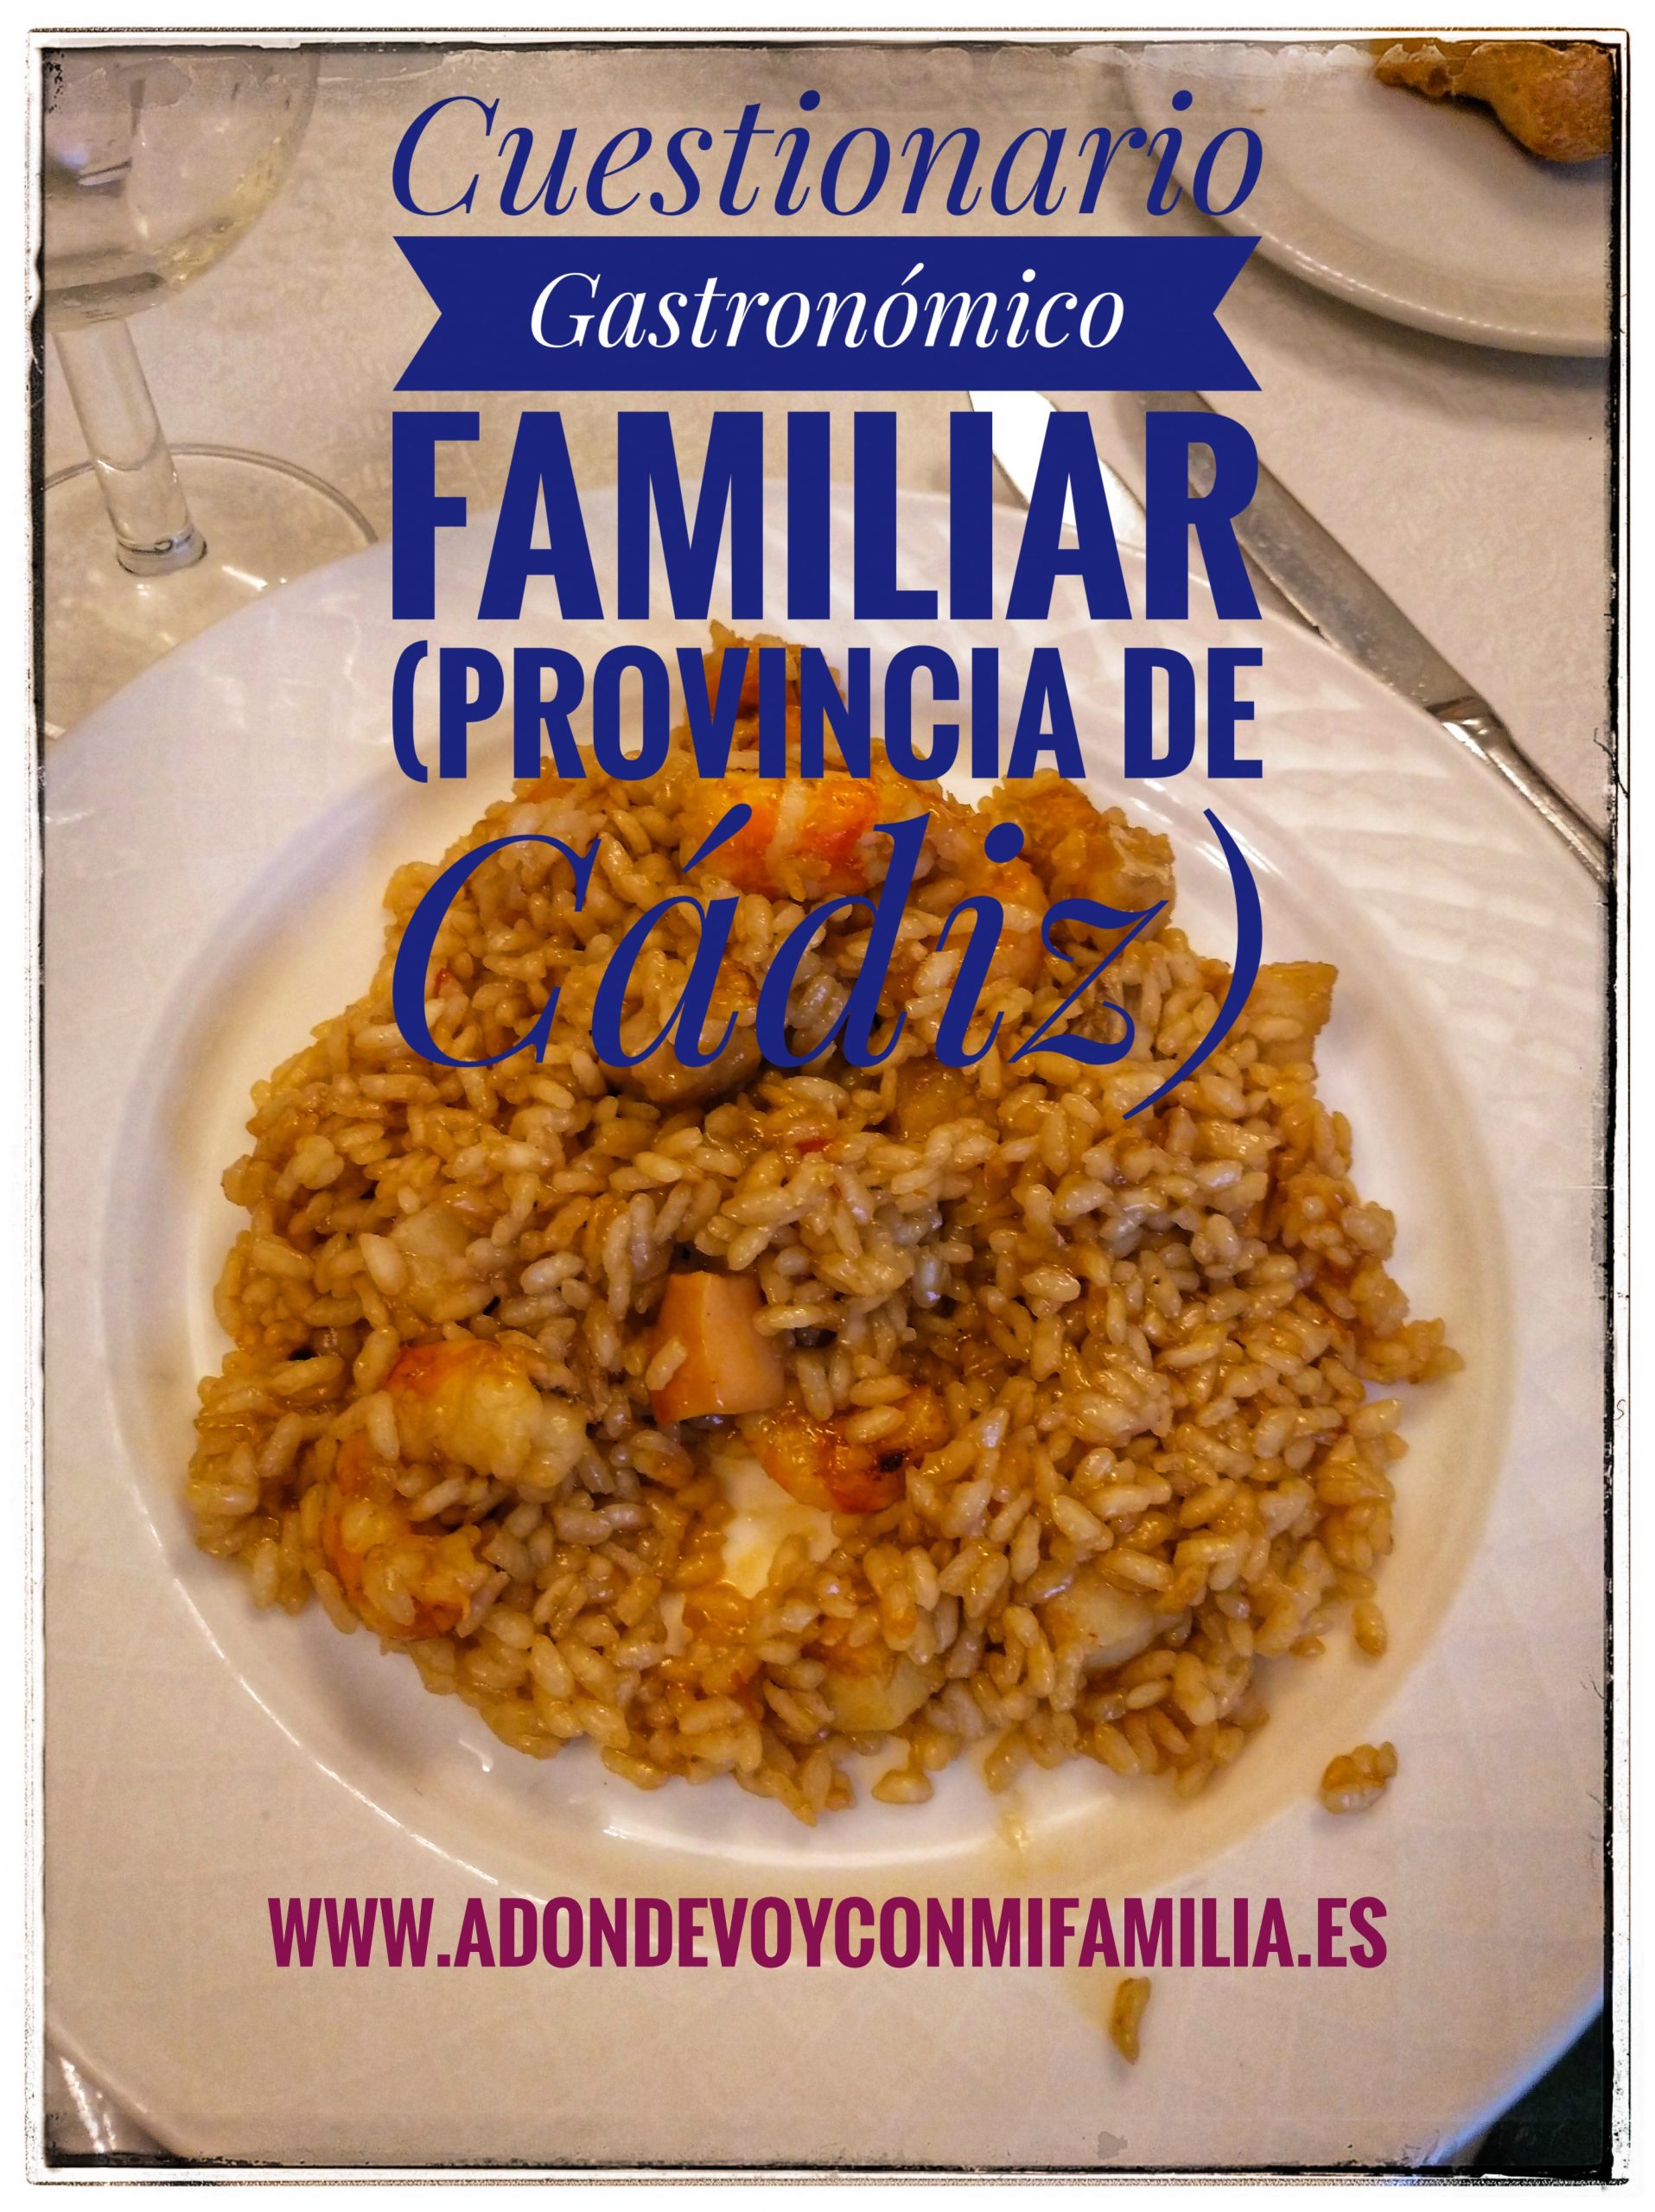 Cuestionario Gastronómico Familiar Provincia de Cádiz